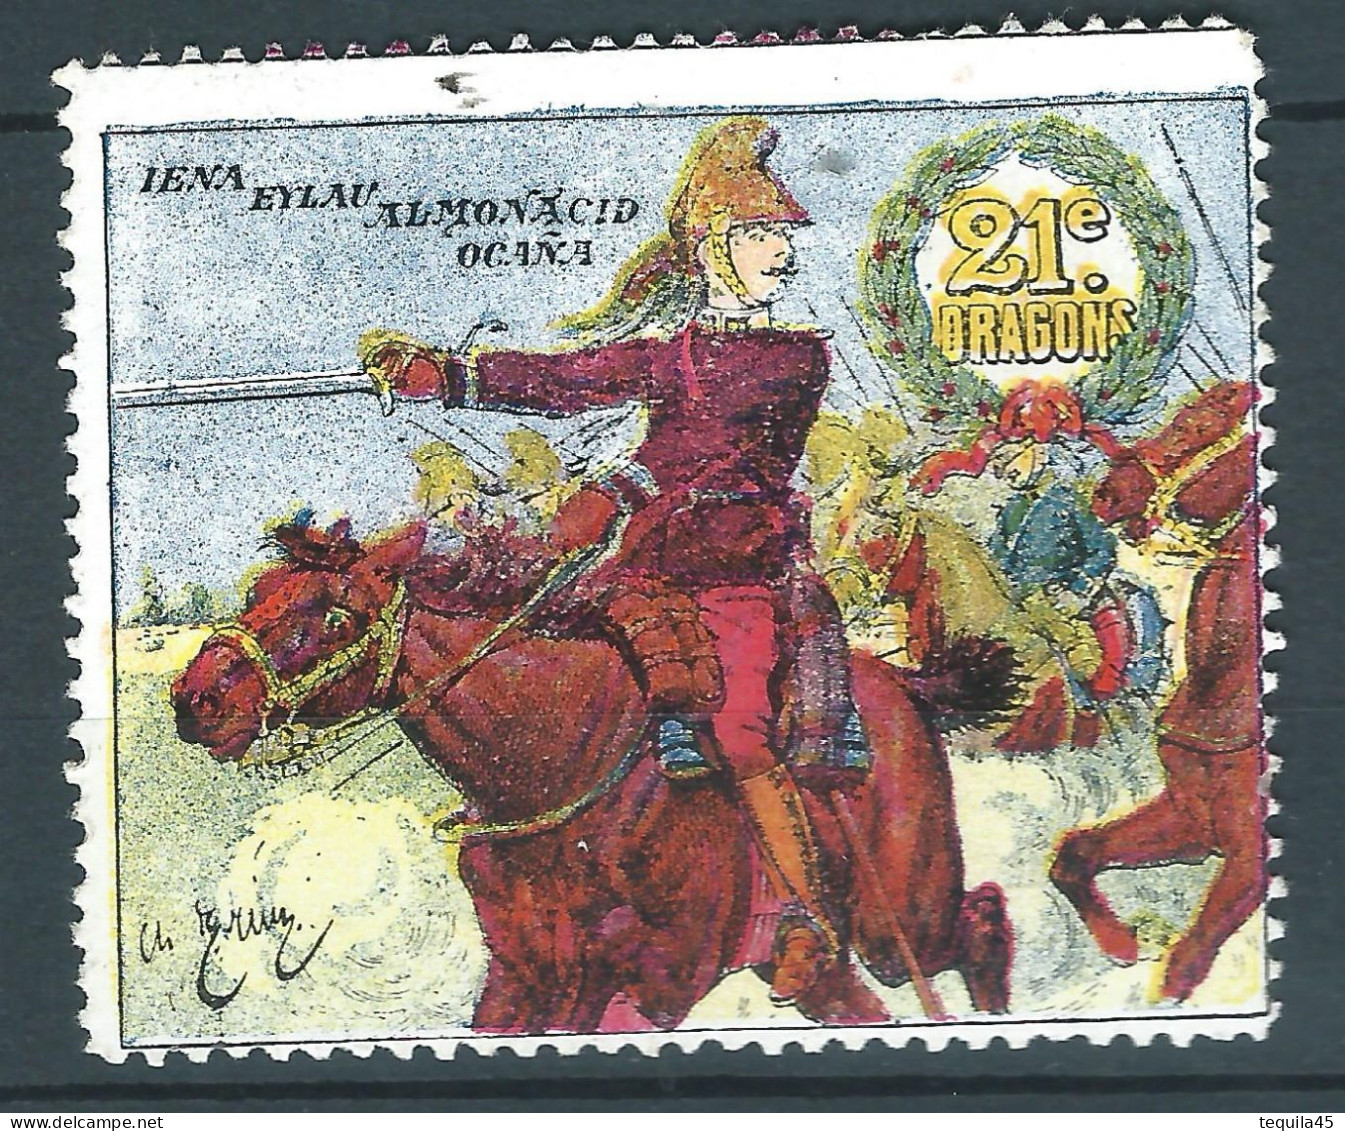 Rare : Belle Vignette DELANDRE - France - 21 Régt De DRAGONS - 1914 -18 WWI WW1 Poster Stamp - Erinnophilie